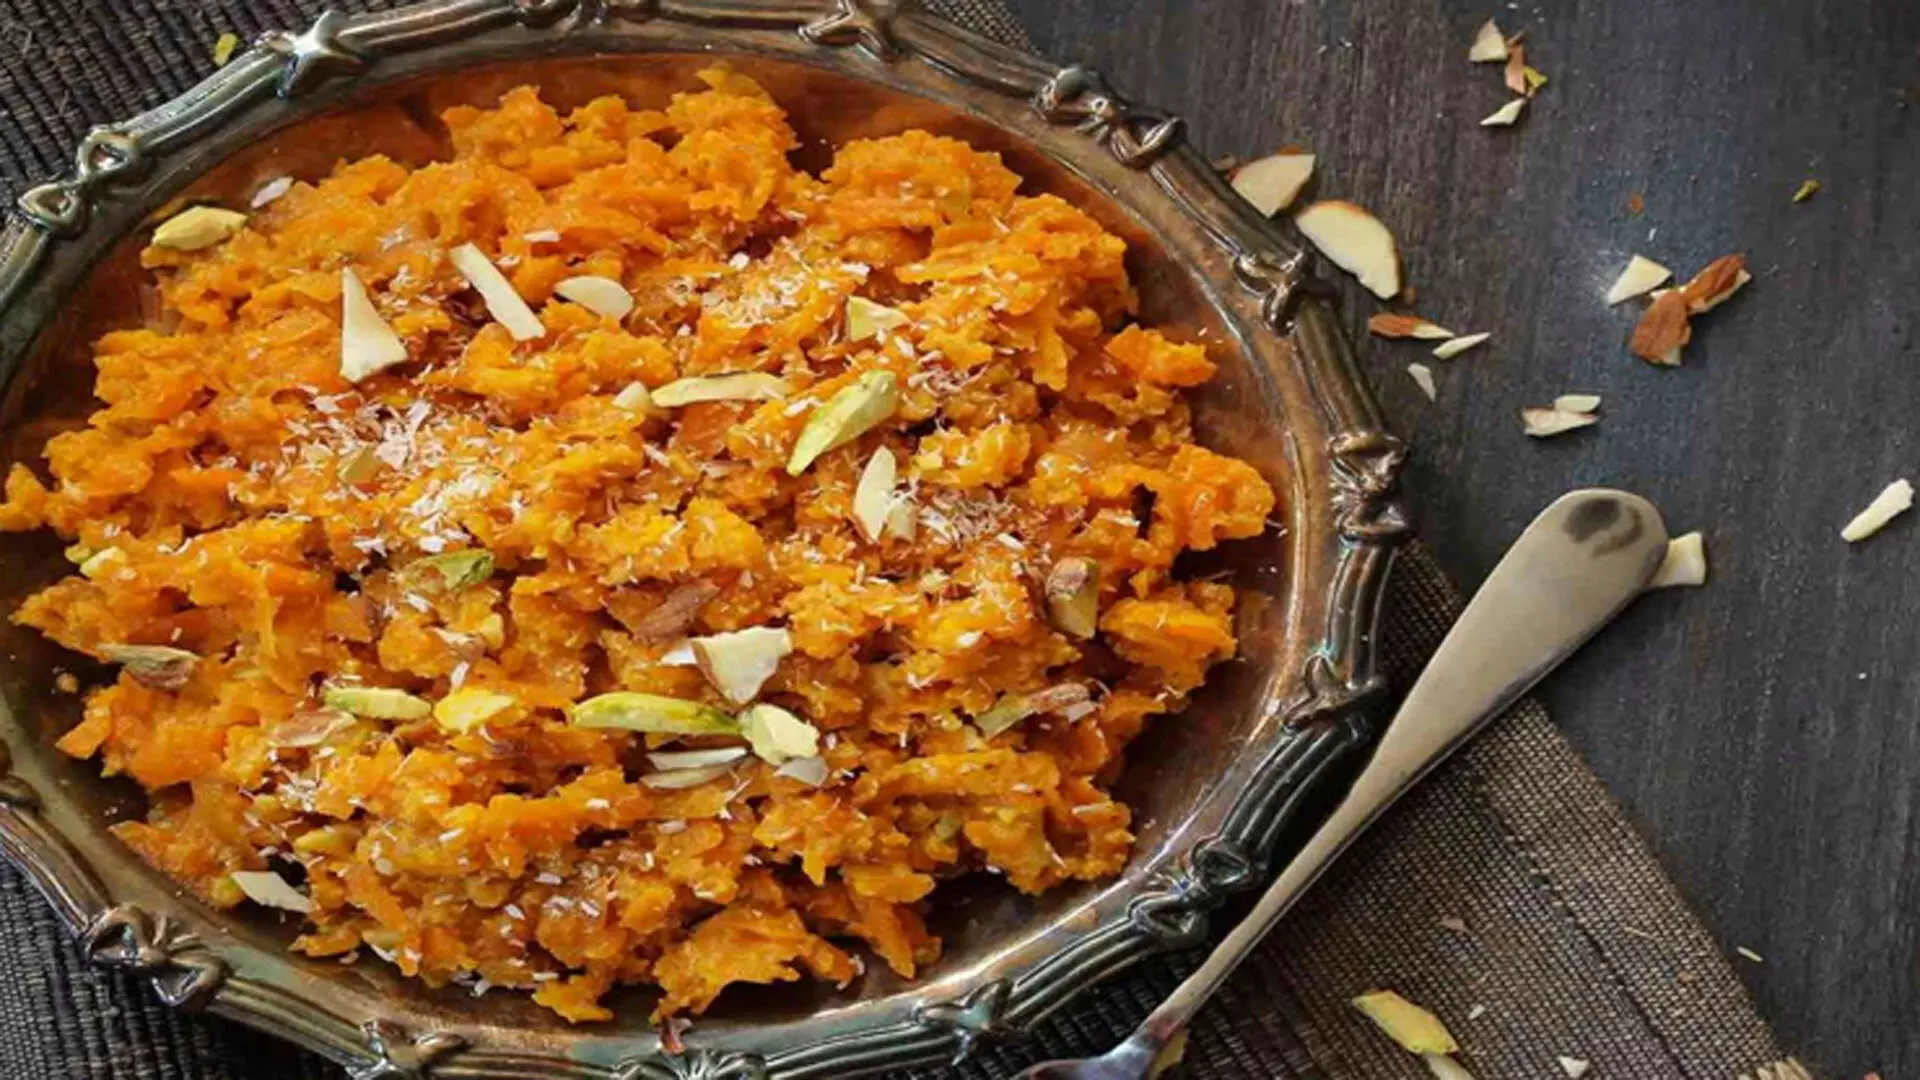 गाजर का हलवा जिसका स्वाद मिष्ठान्न जैसा होता है, बिना कद्दूकस किए मिनटों में बनाये